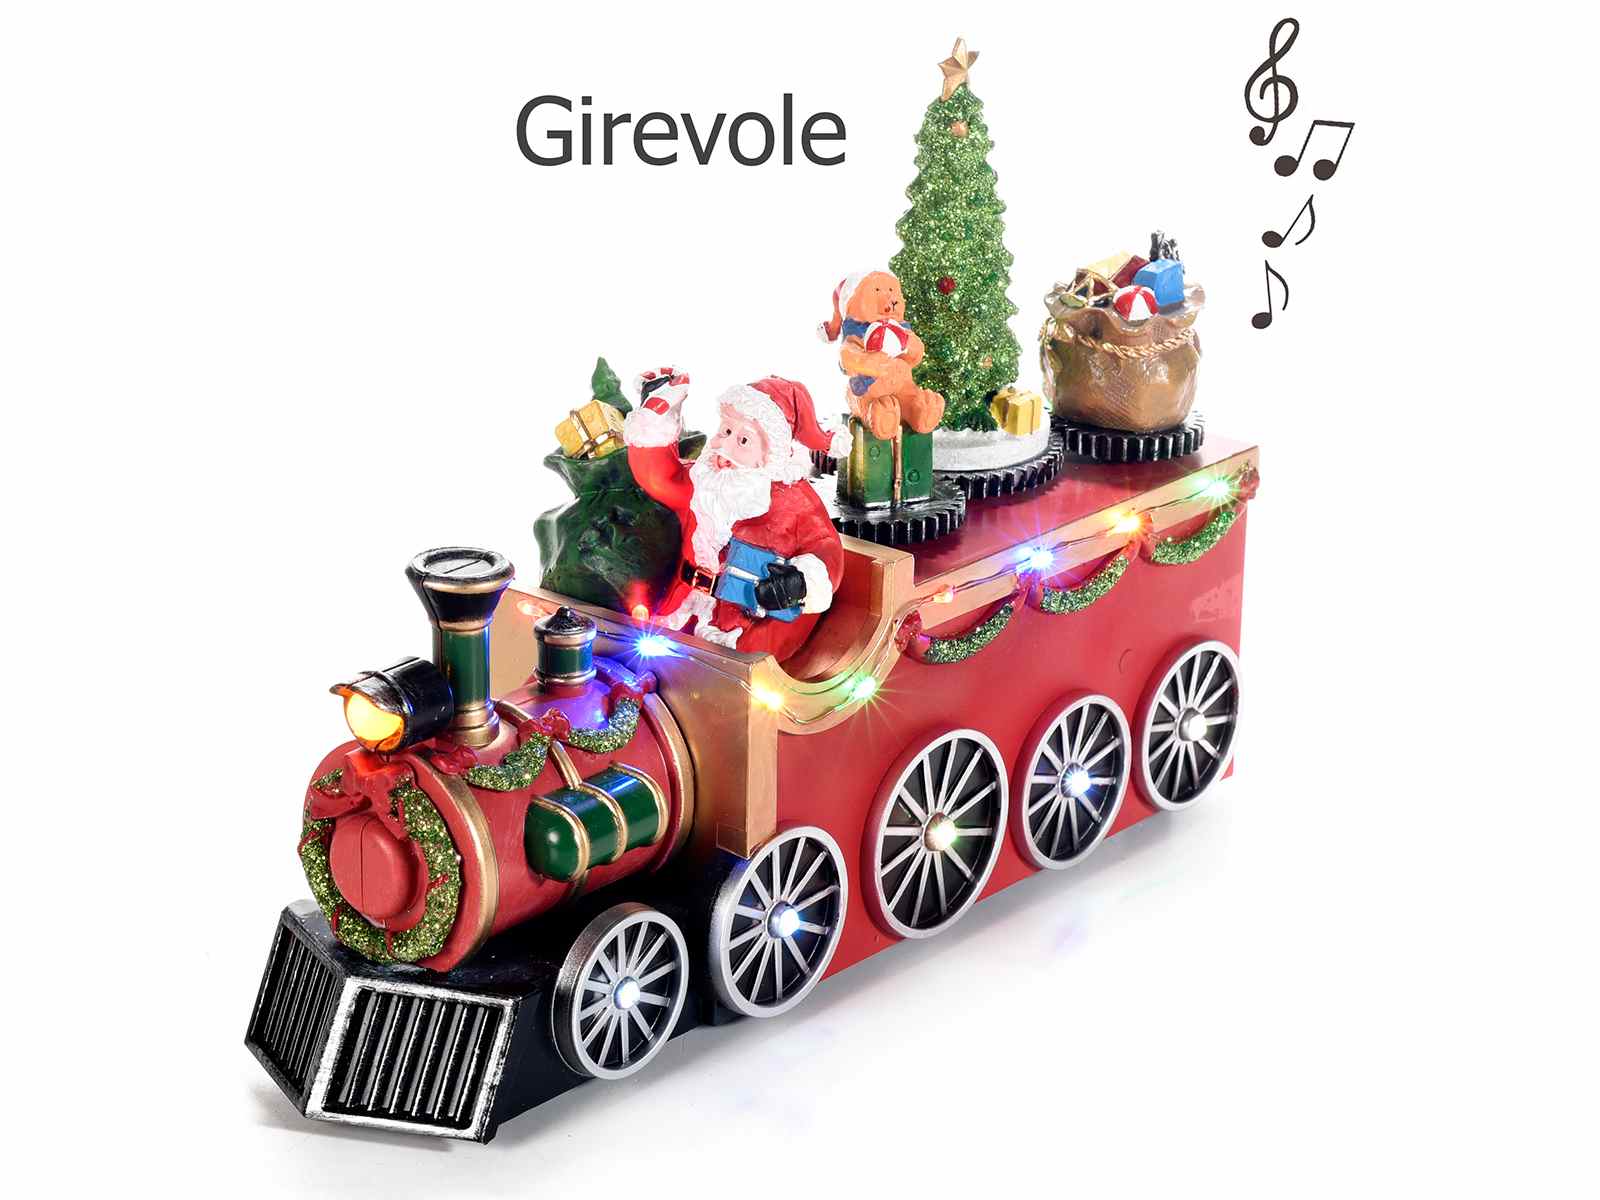 Babbo Natale Italy.Babbo Natale In Treno C Movimento Luci Multicolore E Musica 55 32 85 Art From Italy